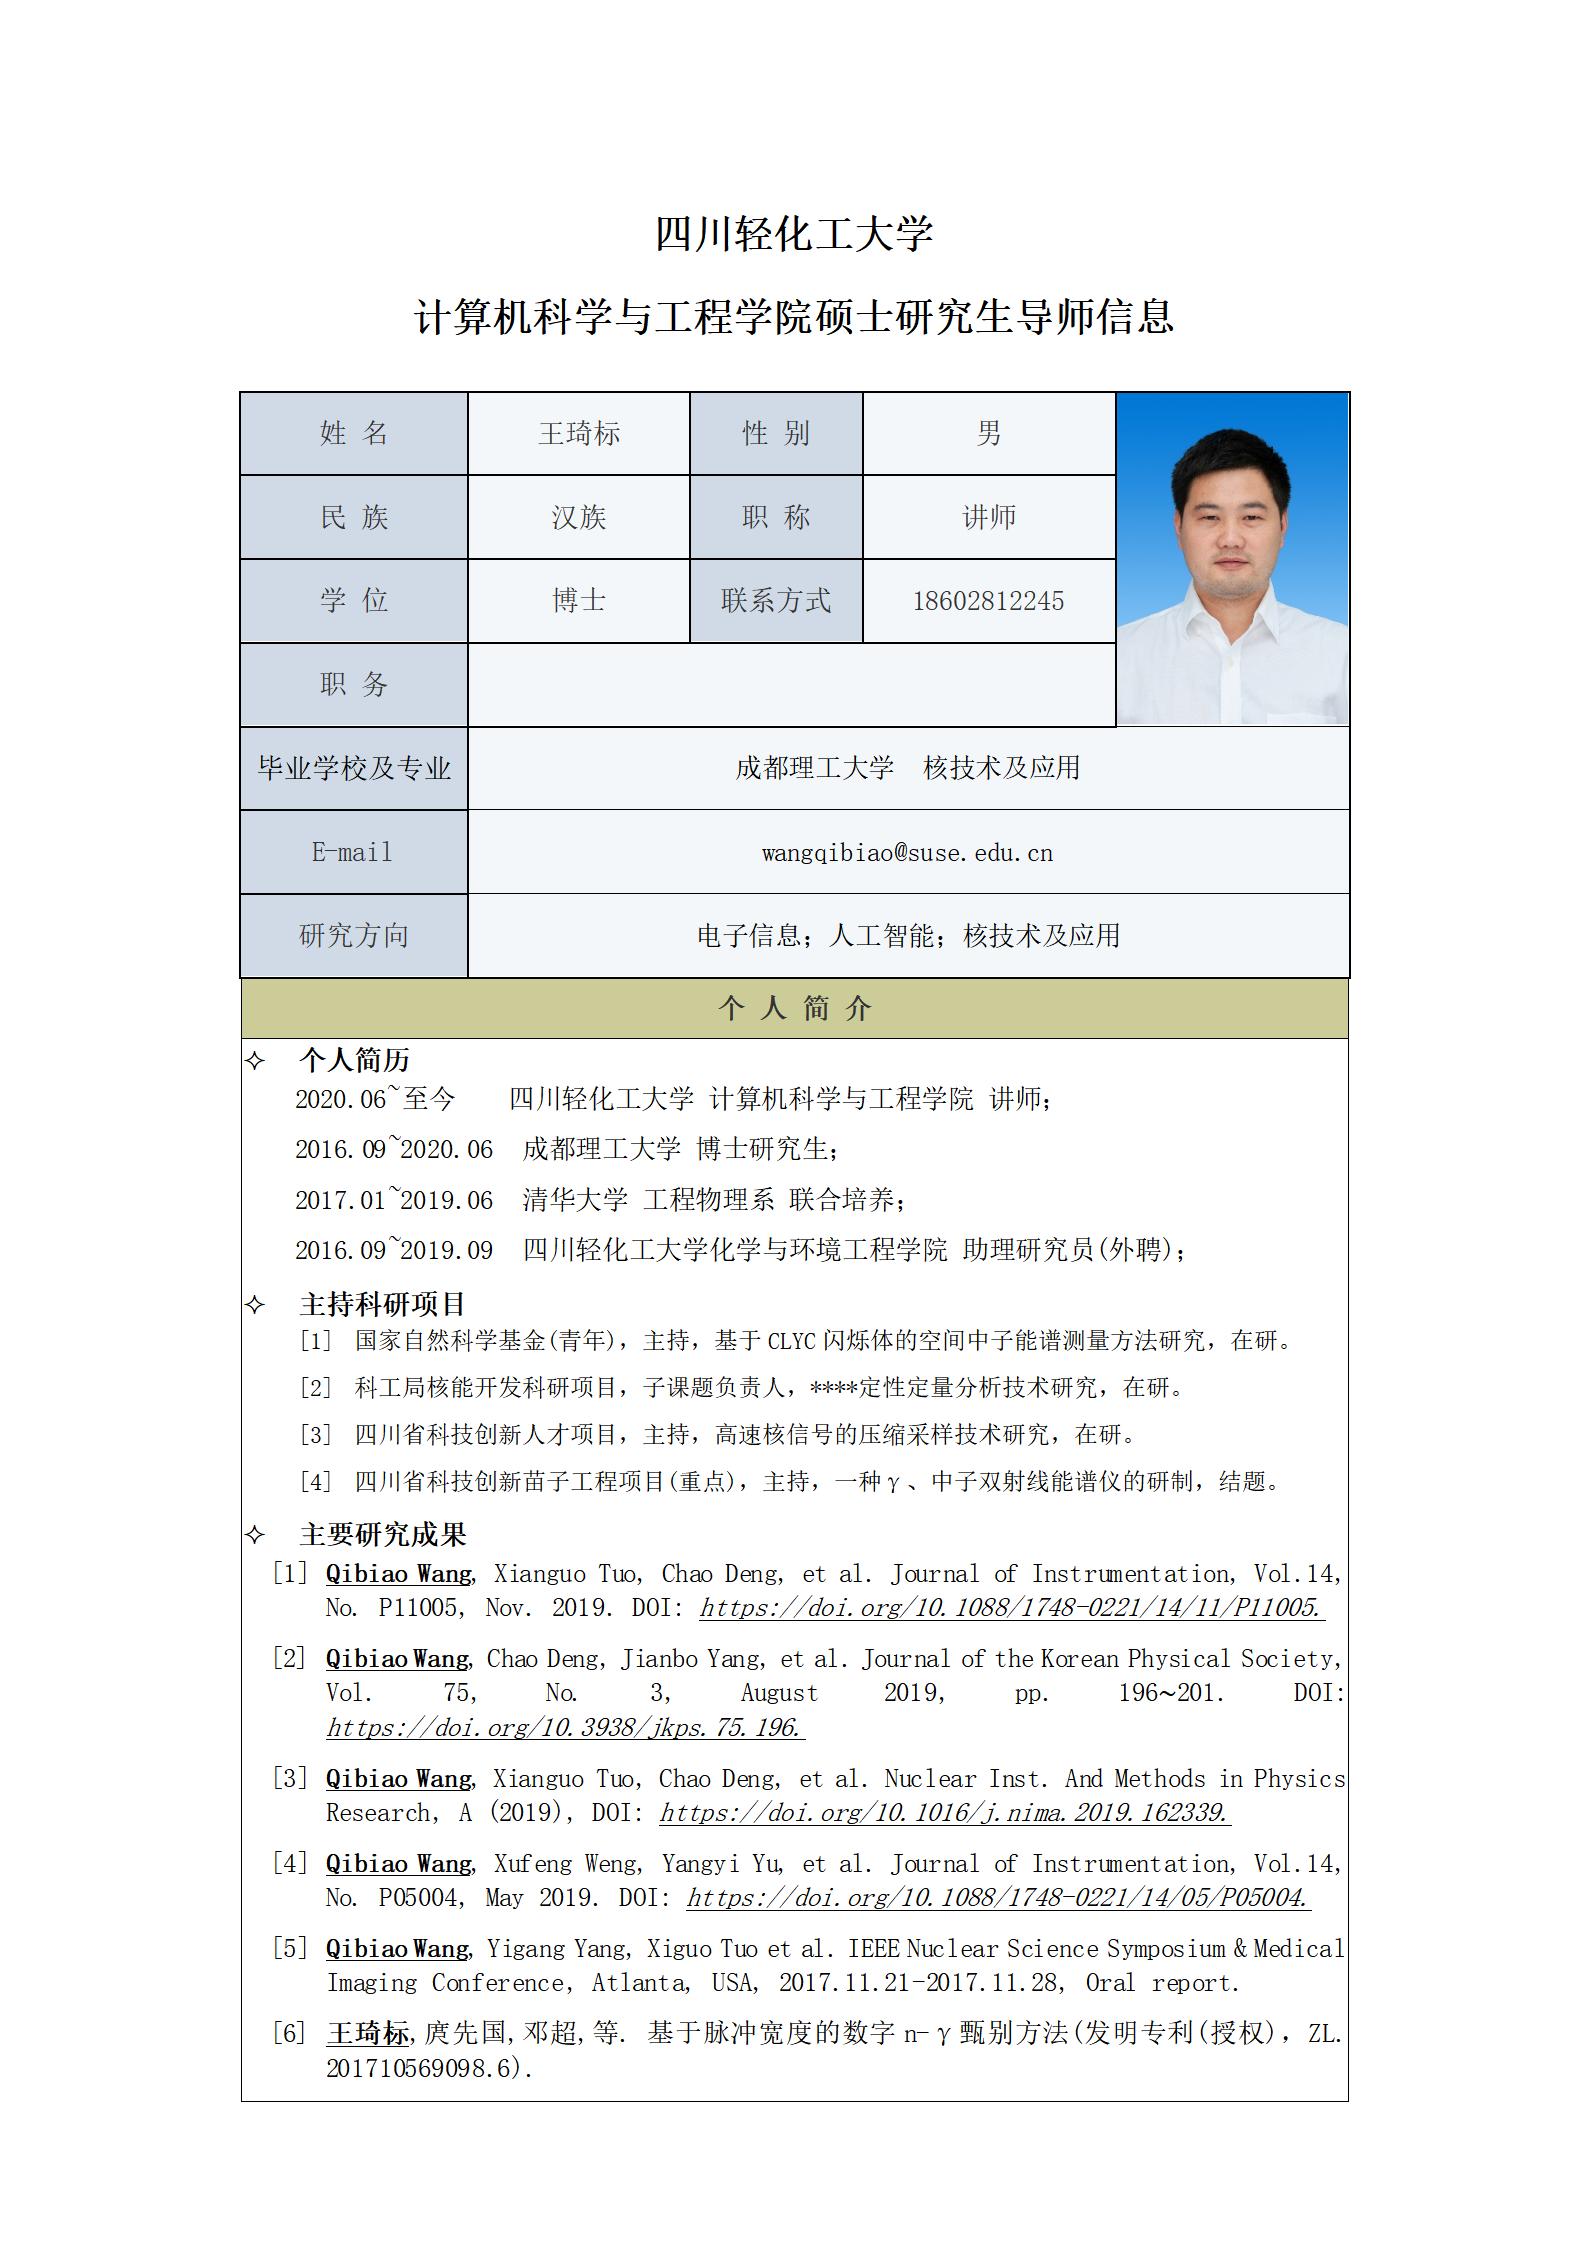 王琦标-2023计算机科学与工程学院硕士生导师信息表_01.jpg